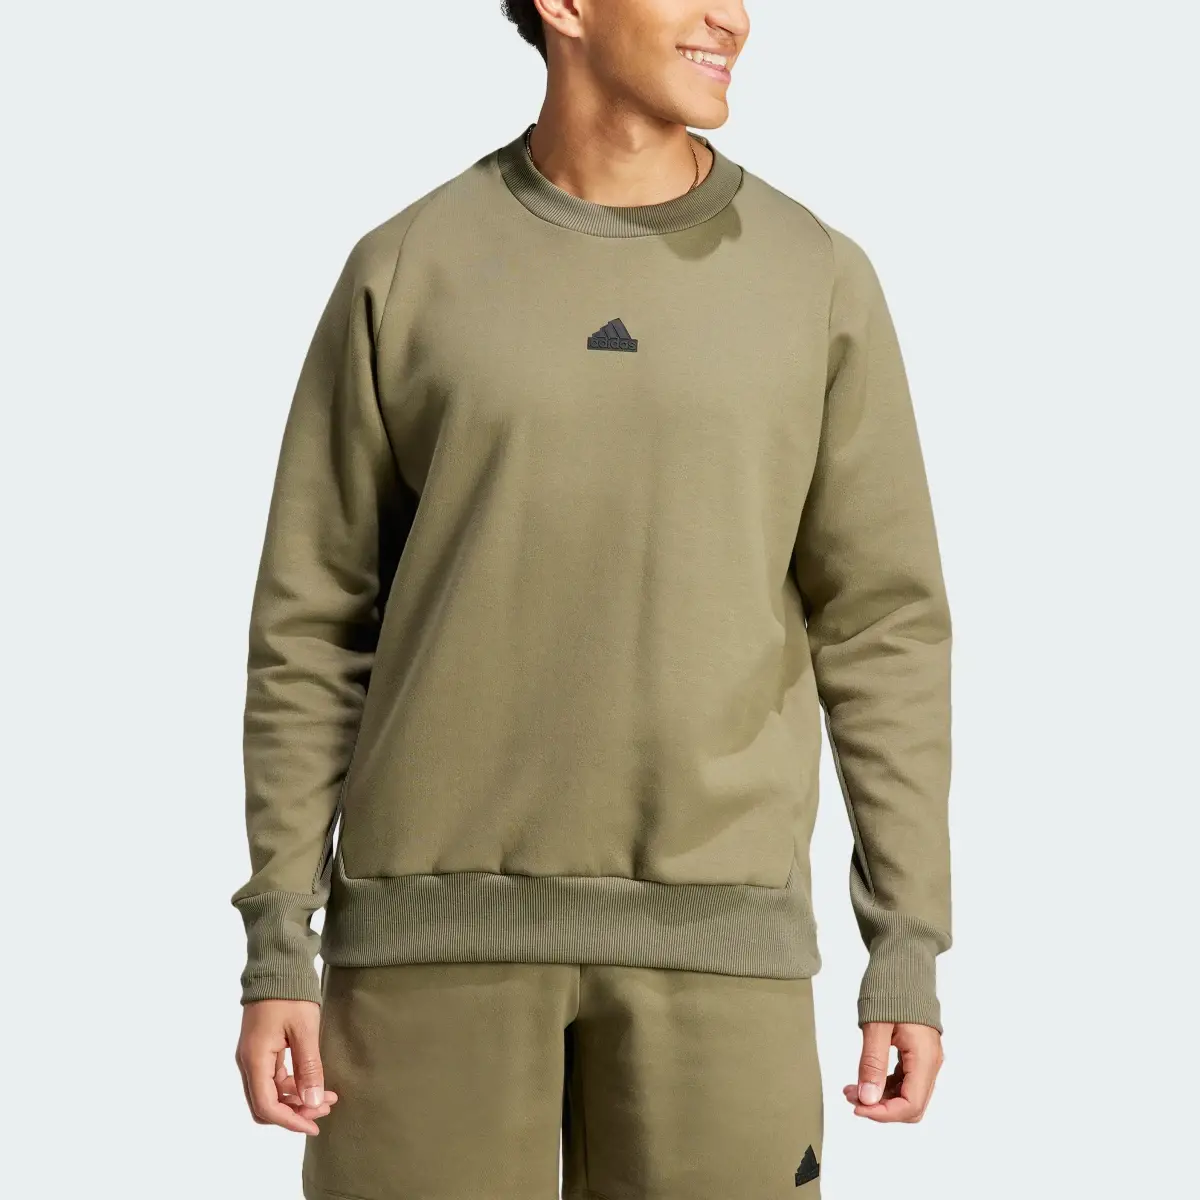 Adidas Z.N.E. Premium Sweatshirt. 1